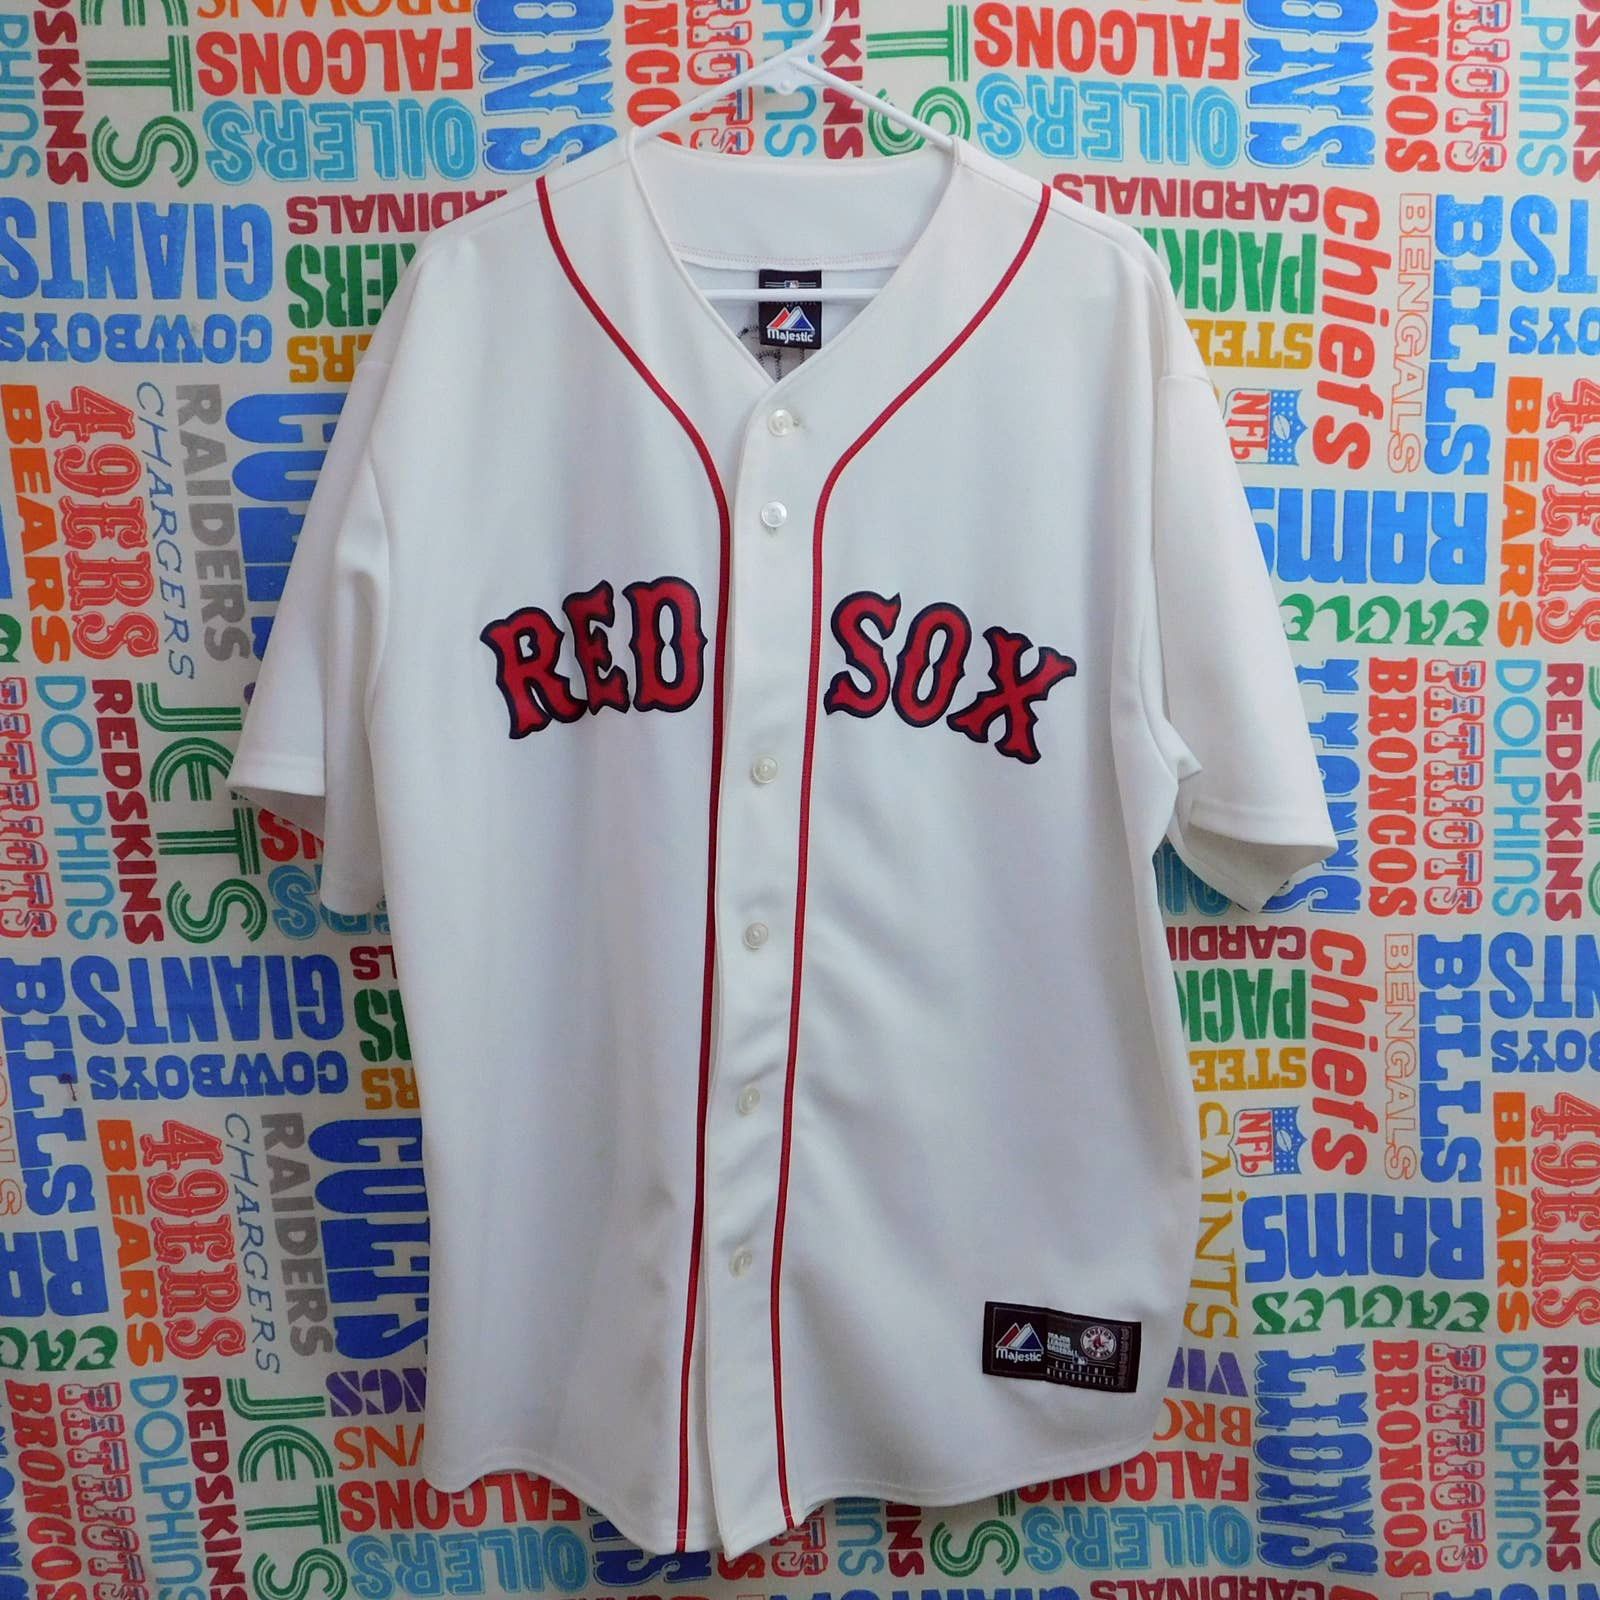 Boston Red Sox Jersey Majestic #18 Matsuzaka White Shirt Size S MLB Baseball